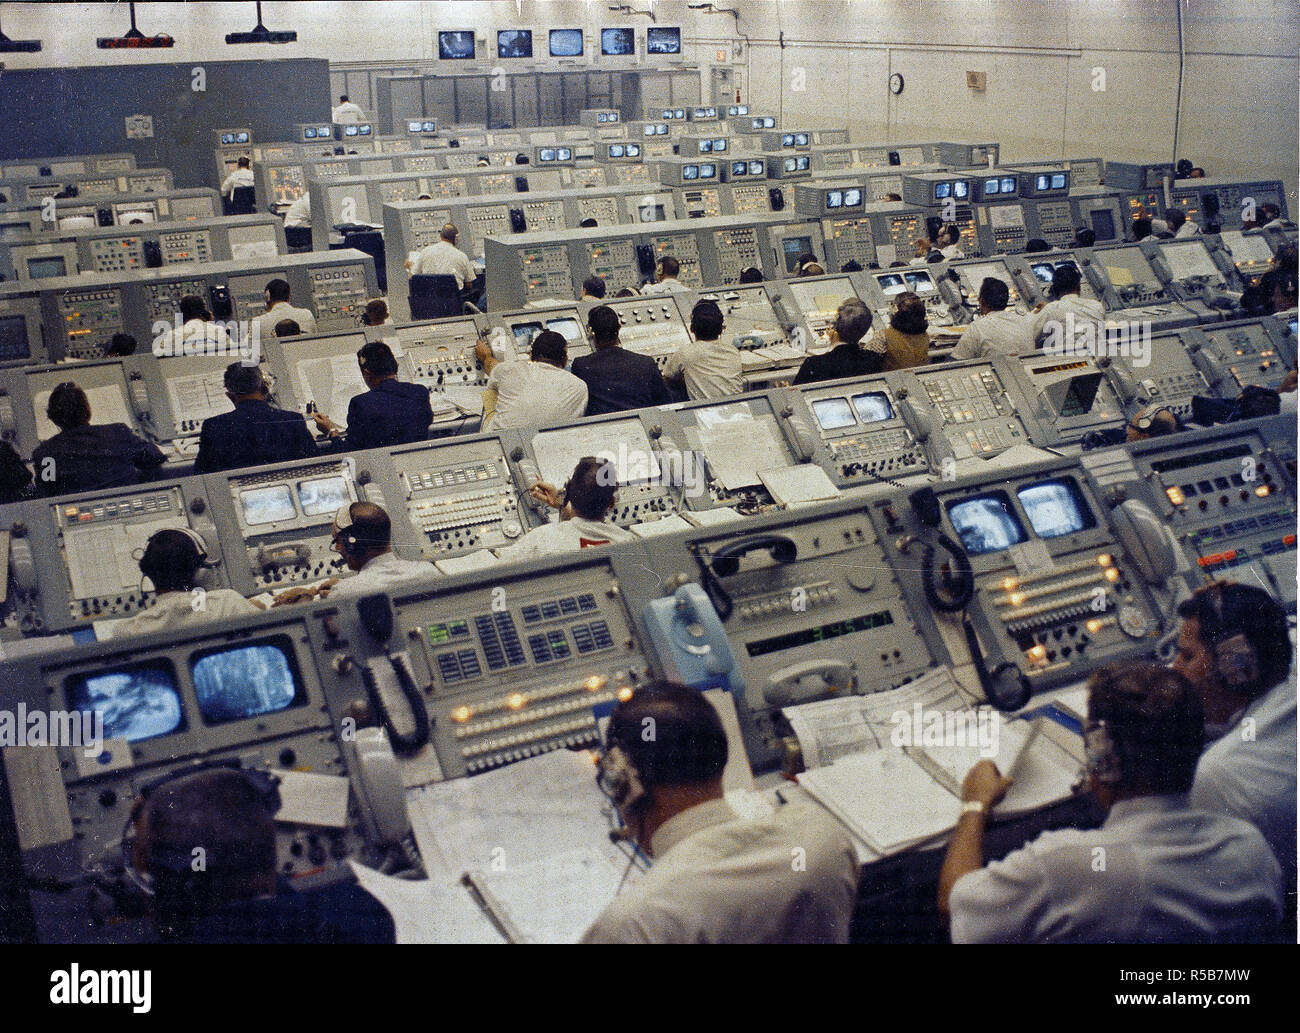 Cette photographie montre un centre de contrôle de lancement au Centre spatial Kennedy au cours de la mission Apollo 8 activités de lancement. Banque D'Images